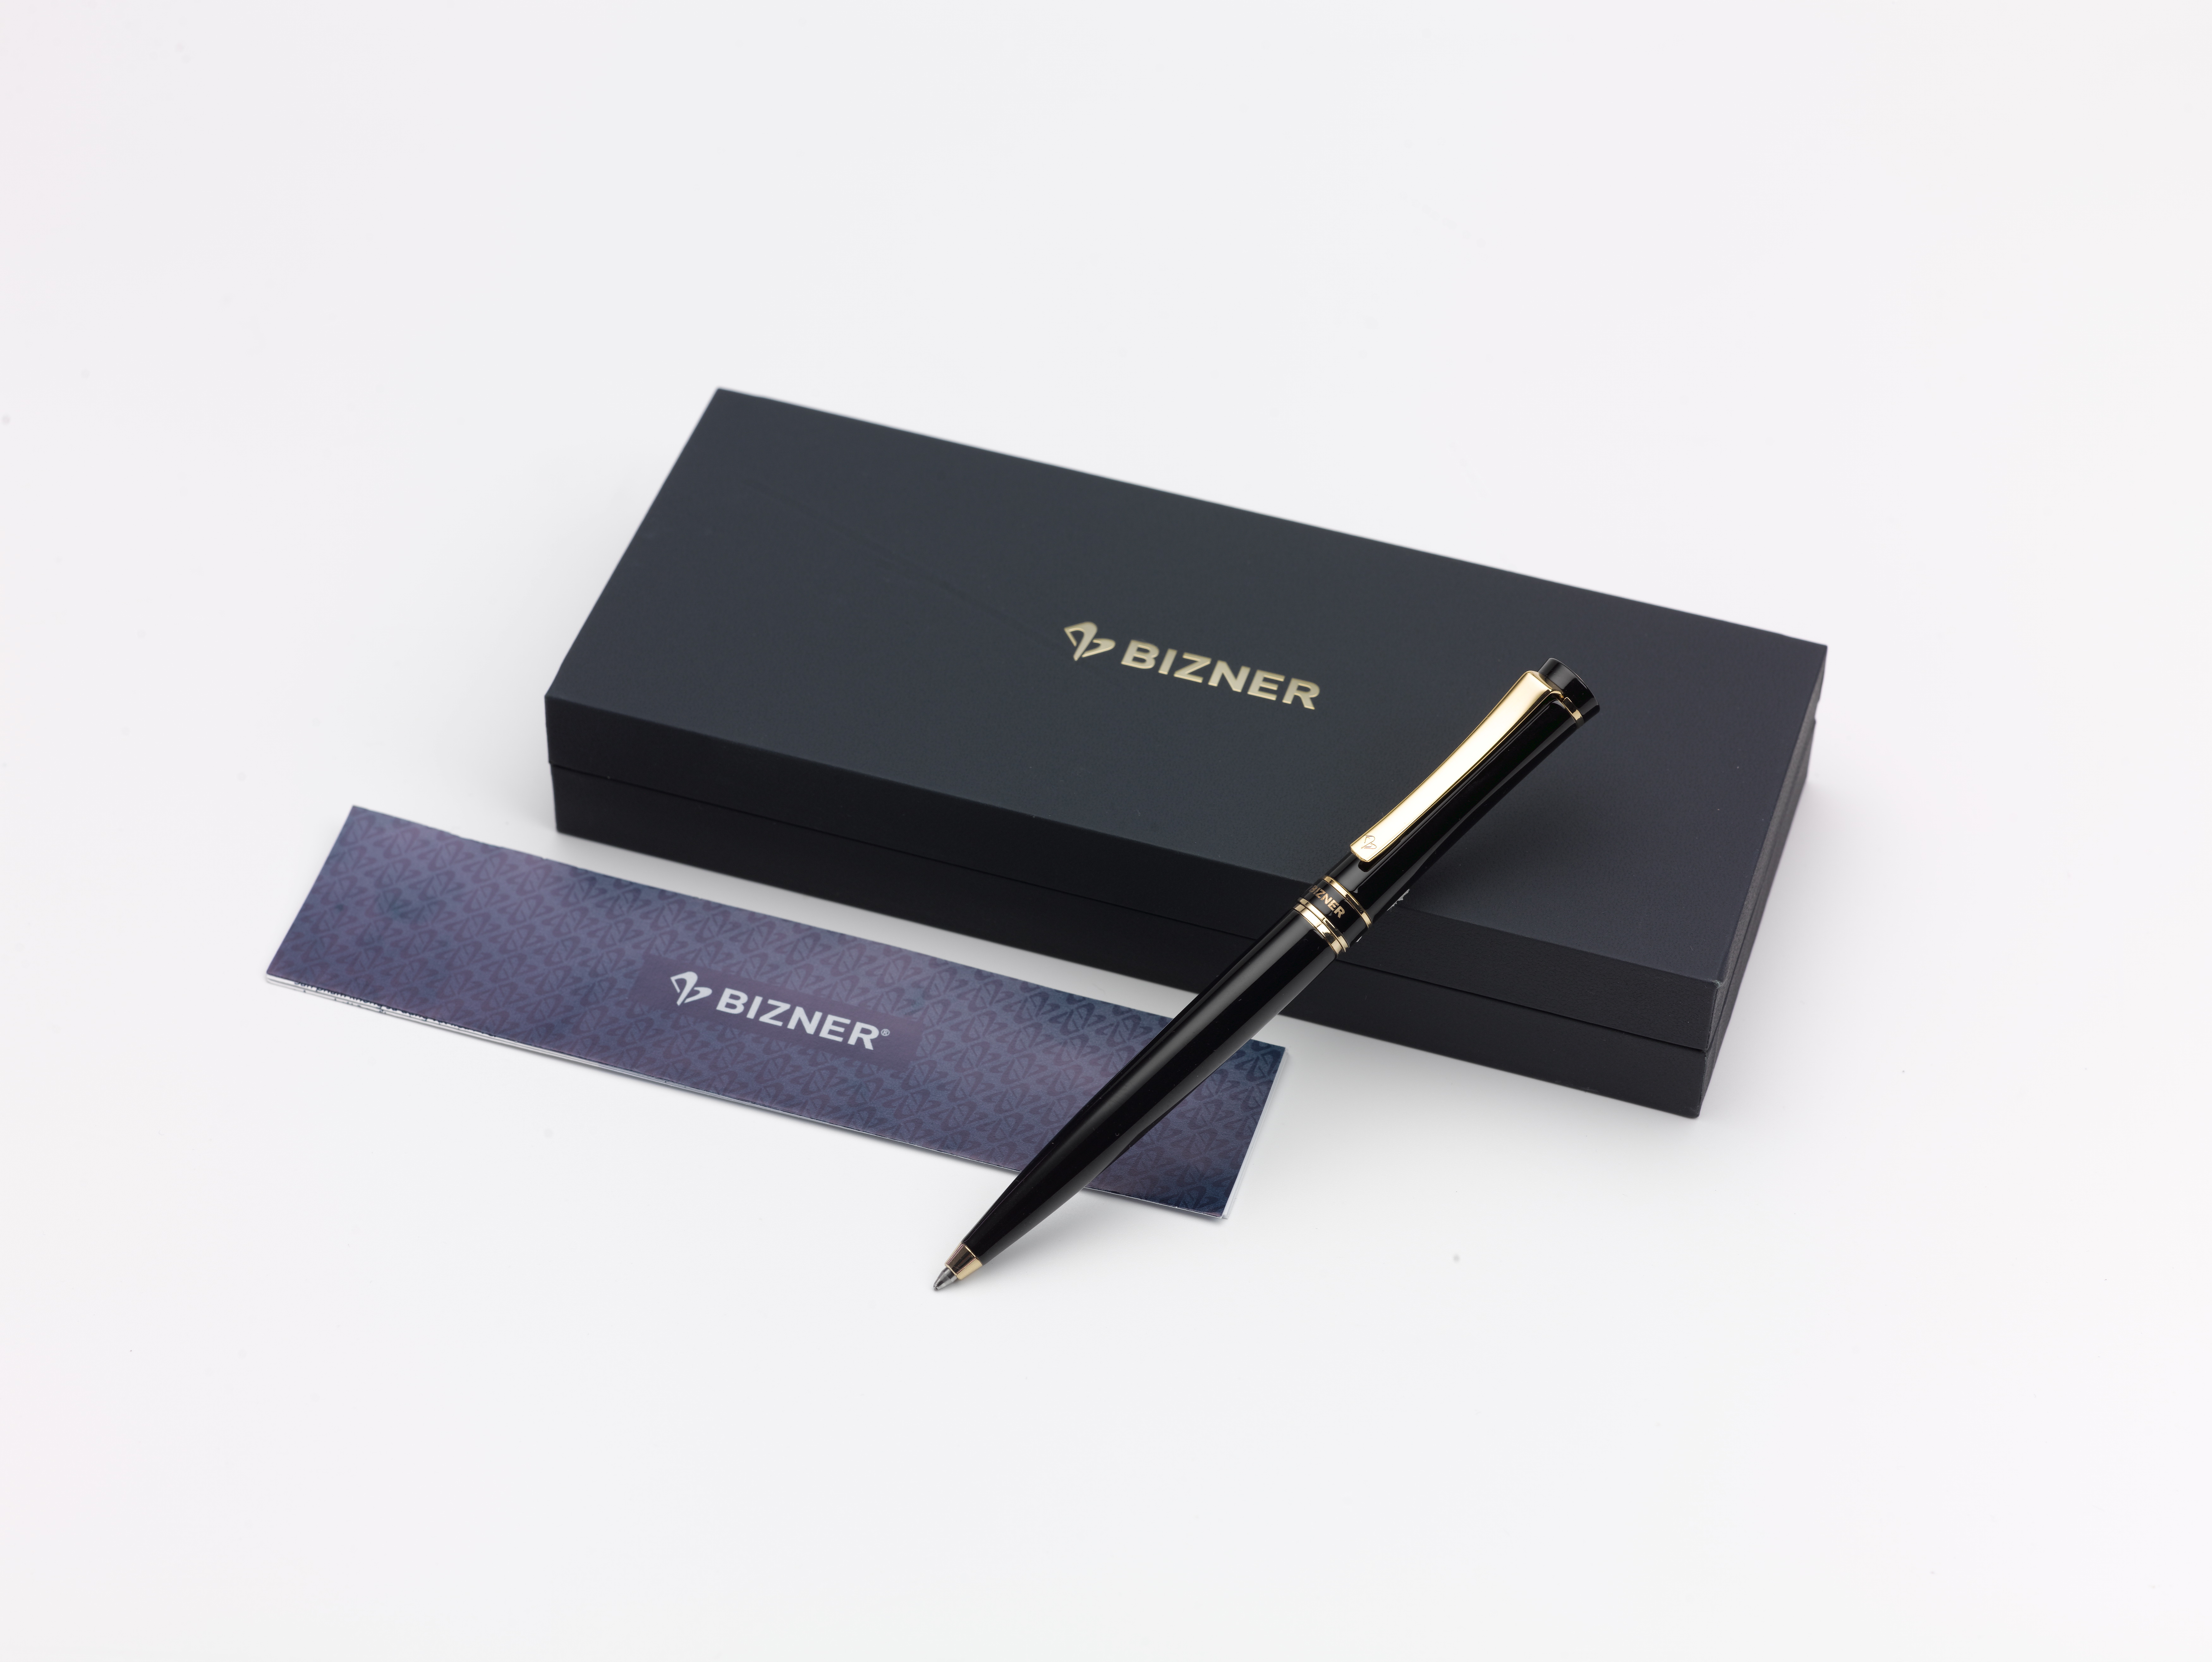  Sản phẩm bút viết cao cấp Bizner của Thiên Long dành cho giới doanh nhân.